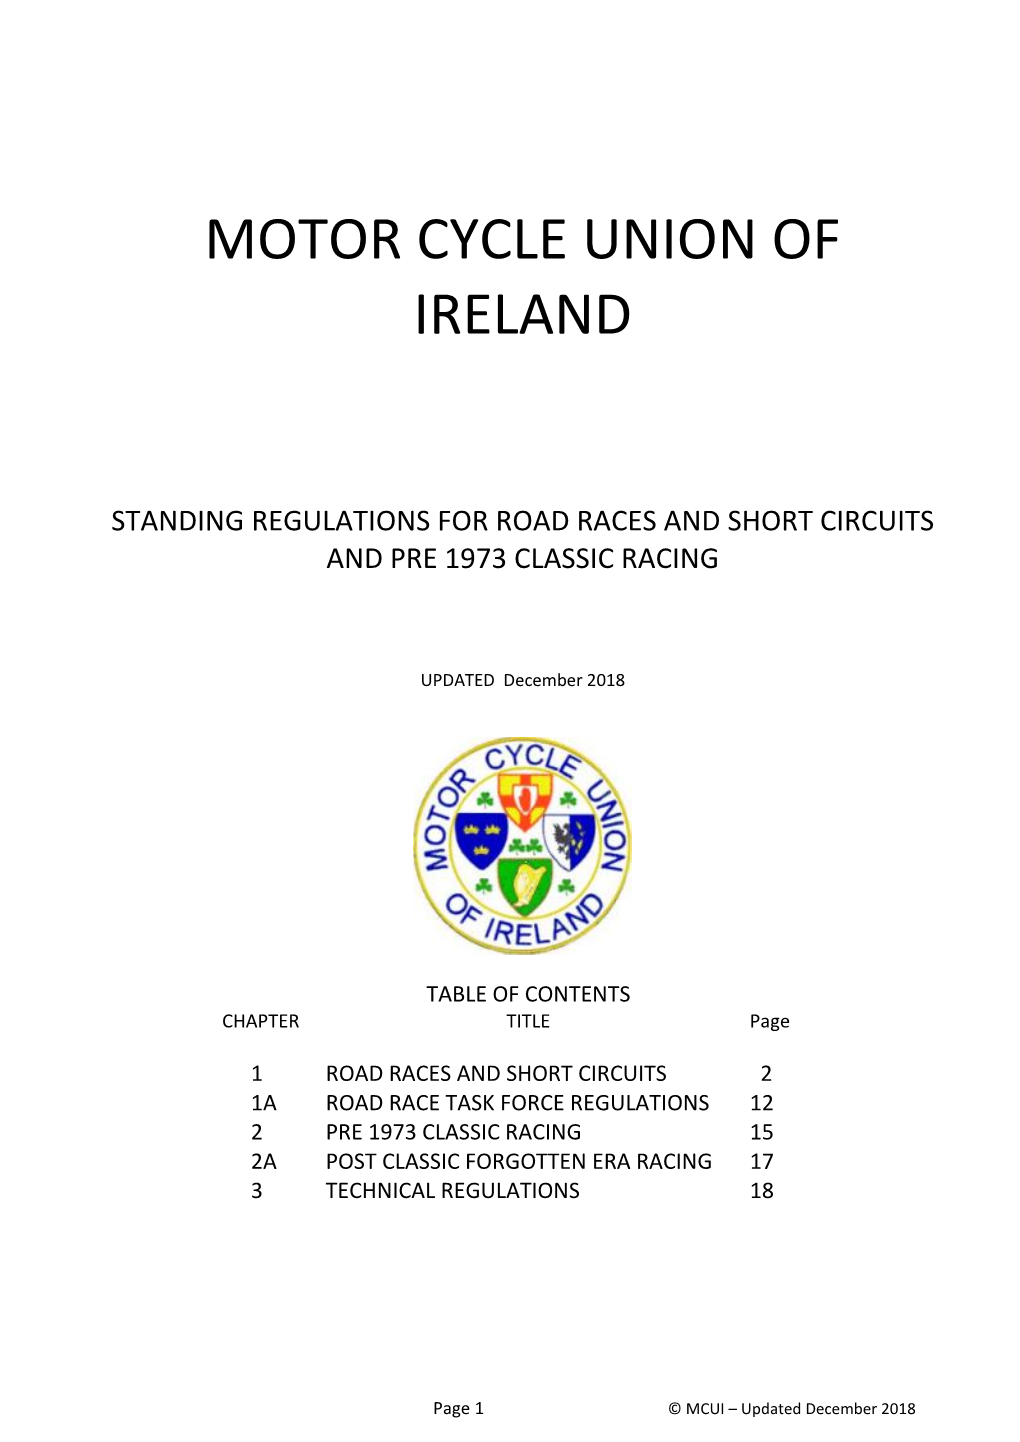 Motor Cycle Union of Ireland